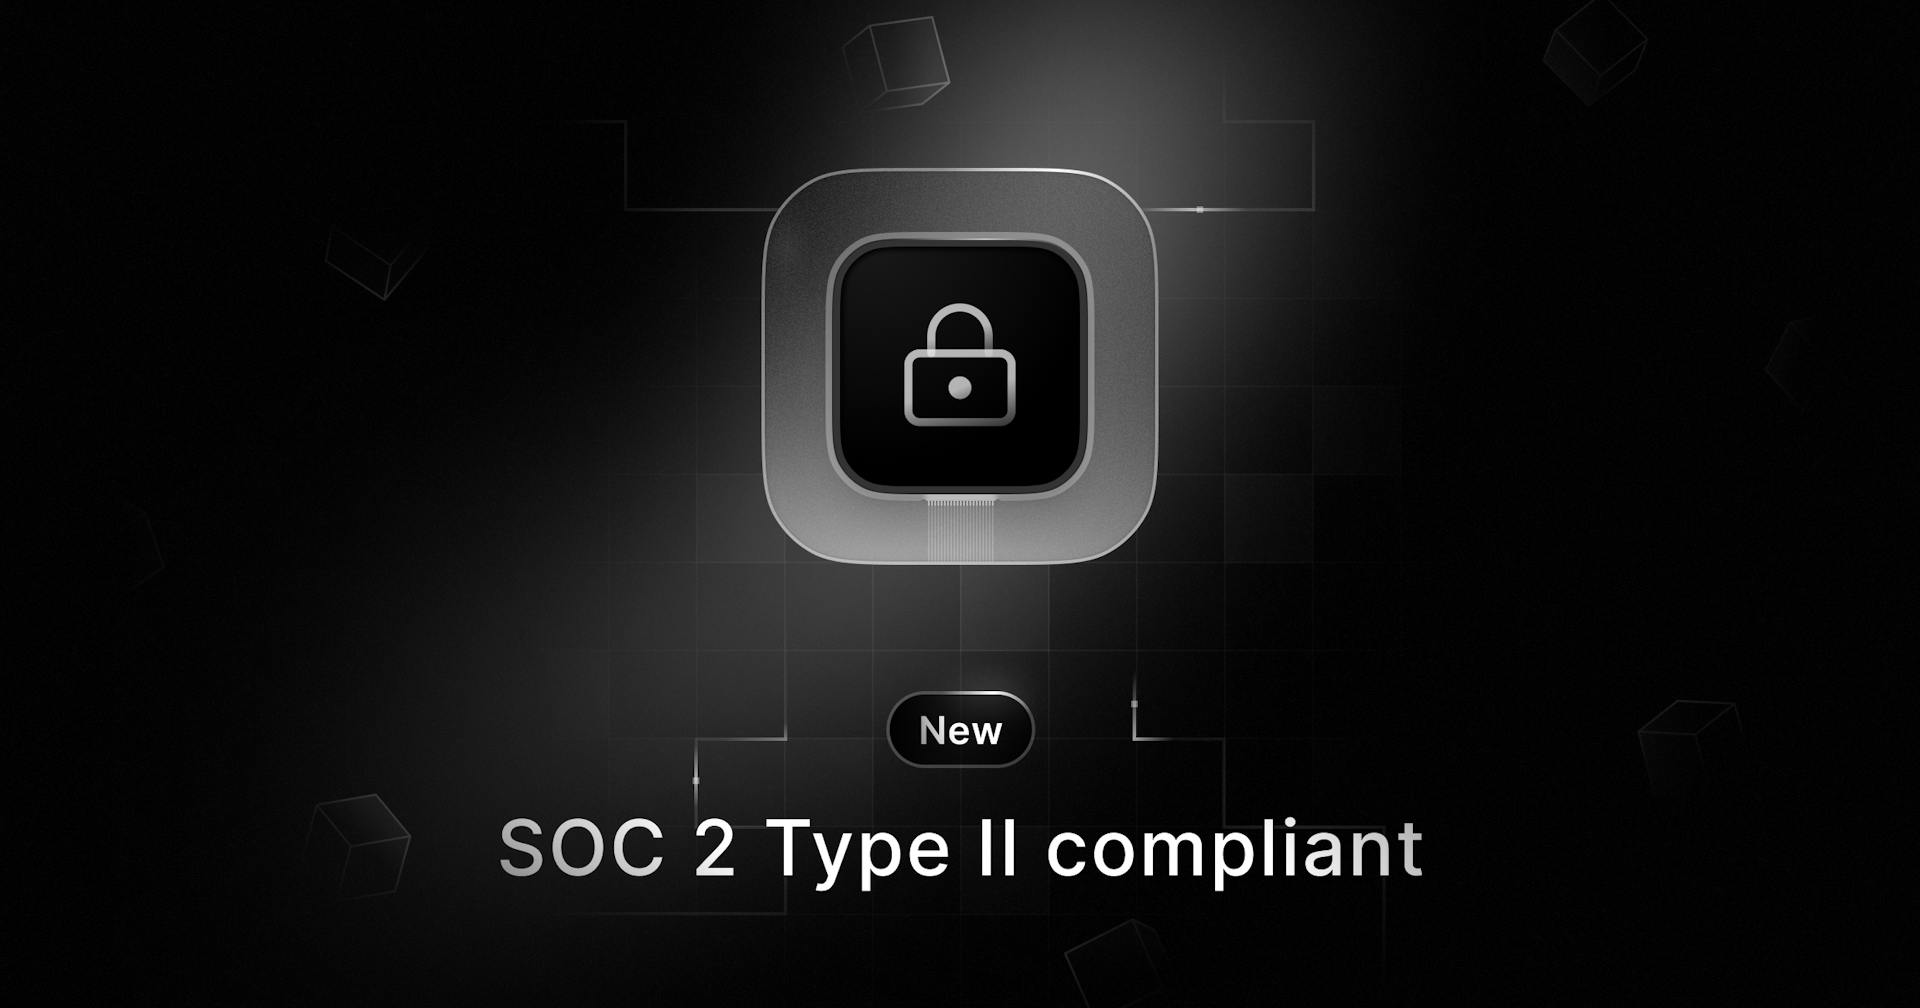 Resend is SOC 2 Type II compliant